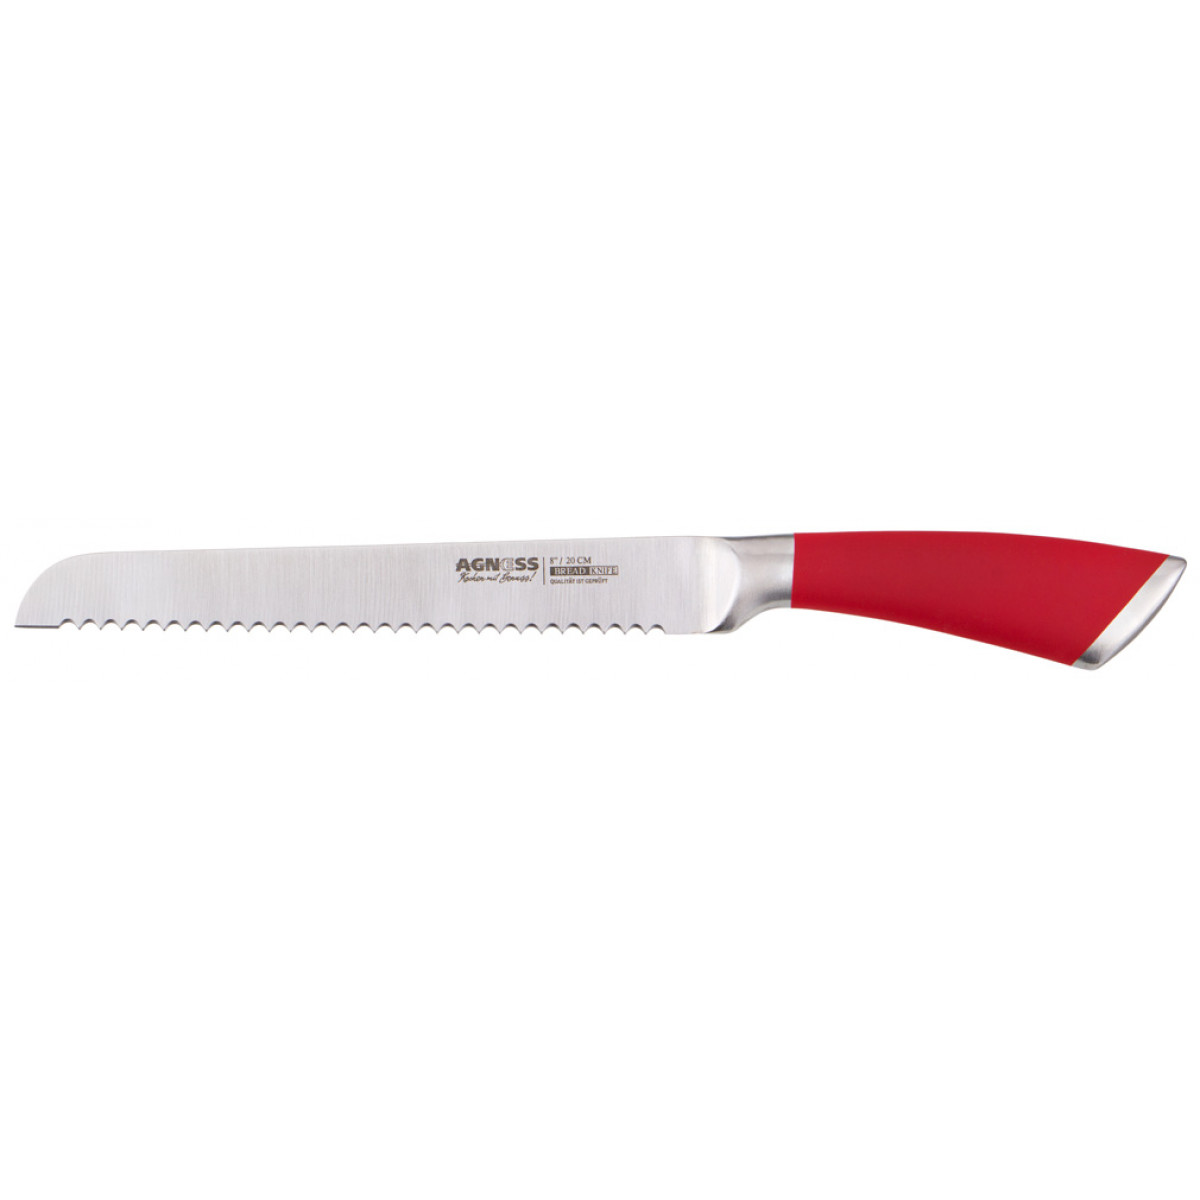 Нож для хлеба Clarisse (20 см), размер 20 см, цвет красный ags298784 Нож для хлеба Clarisse (20 см) - фото 1